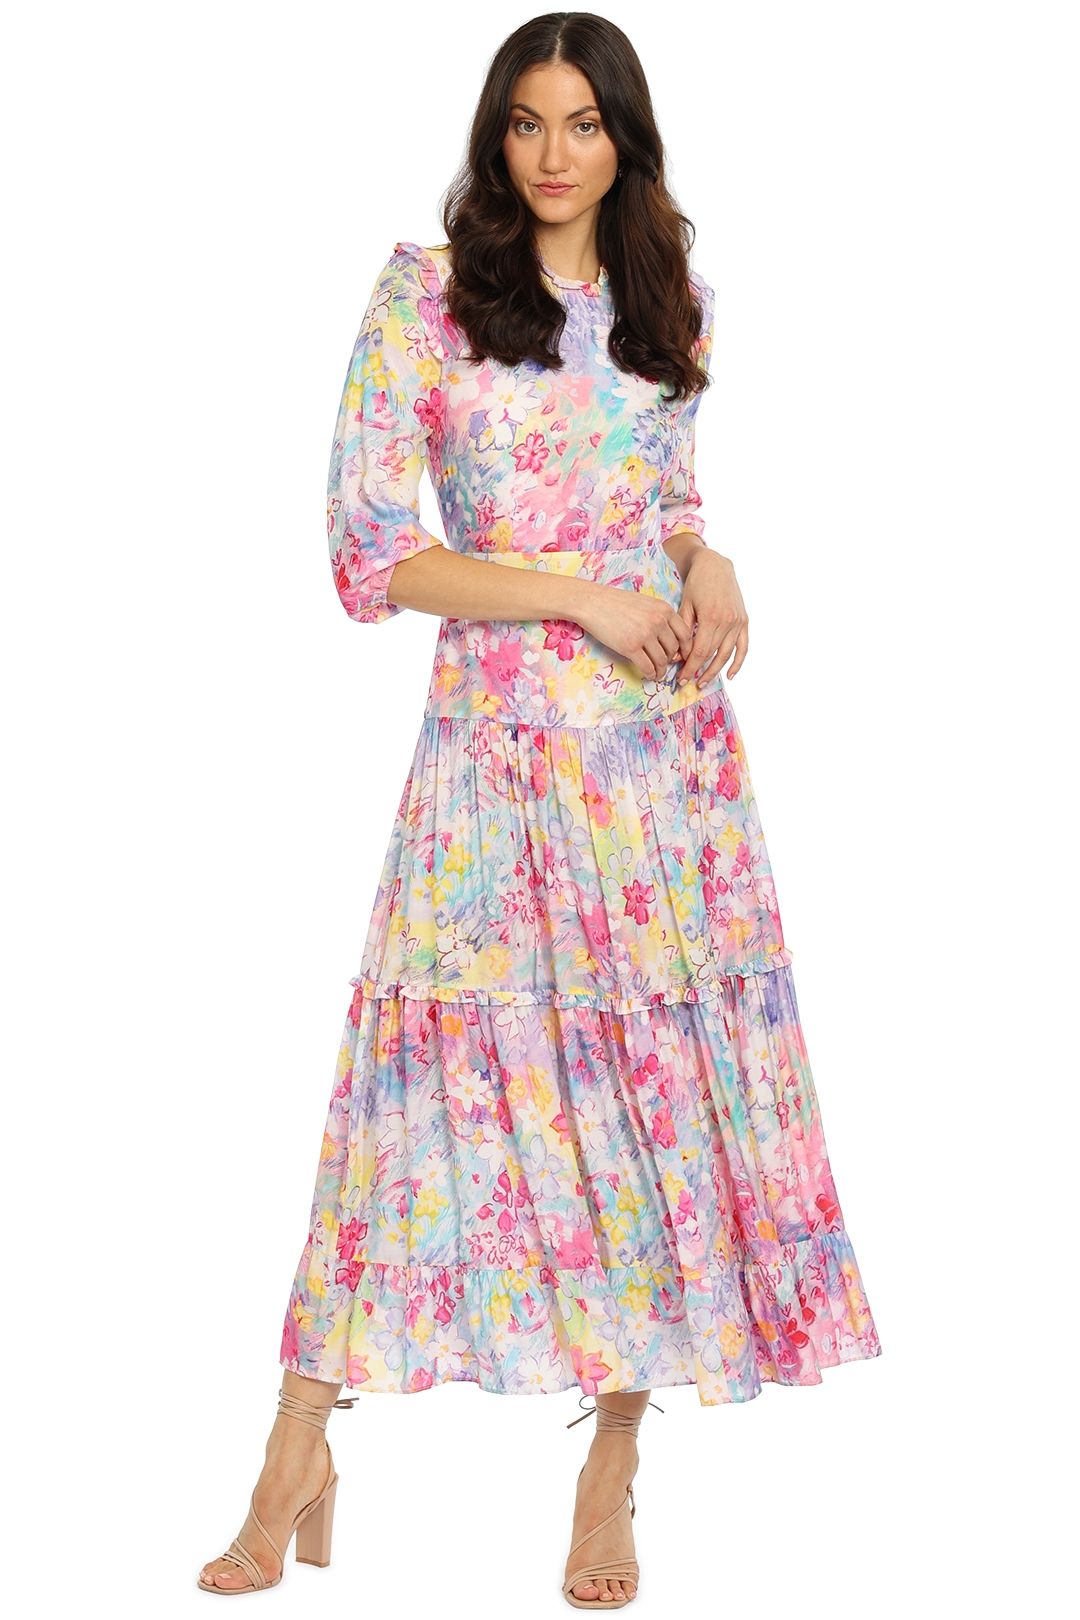 RIXO LONDON - Monet Dress - Floral